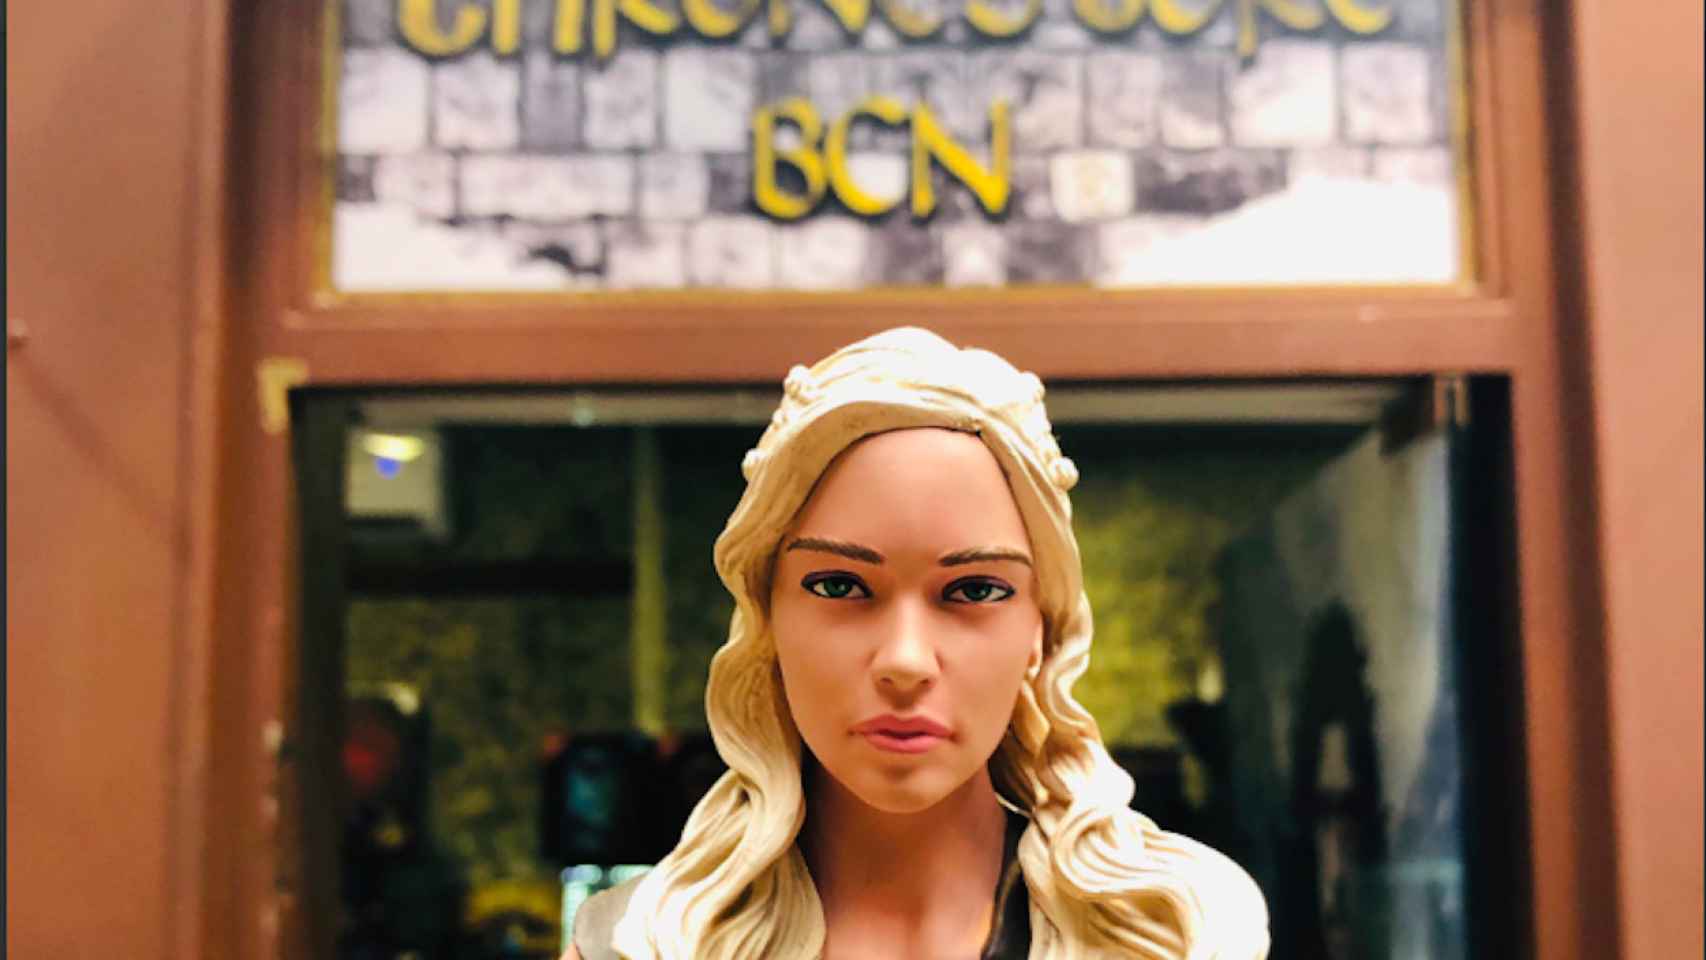 Una escultura de Daenerys Targaryen en la puerta de la tienda especializada de 'Juego de Tronos' / THRONESTORE BCN